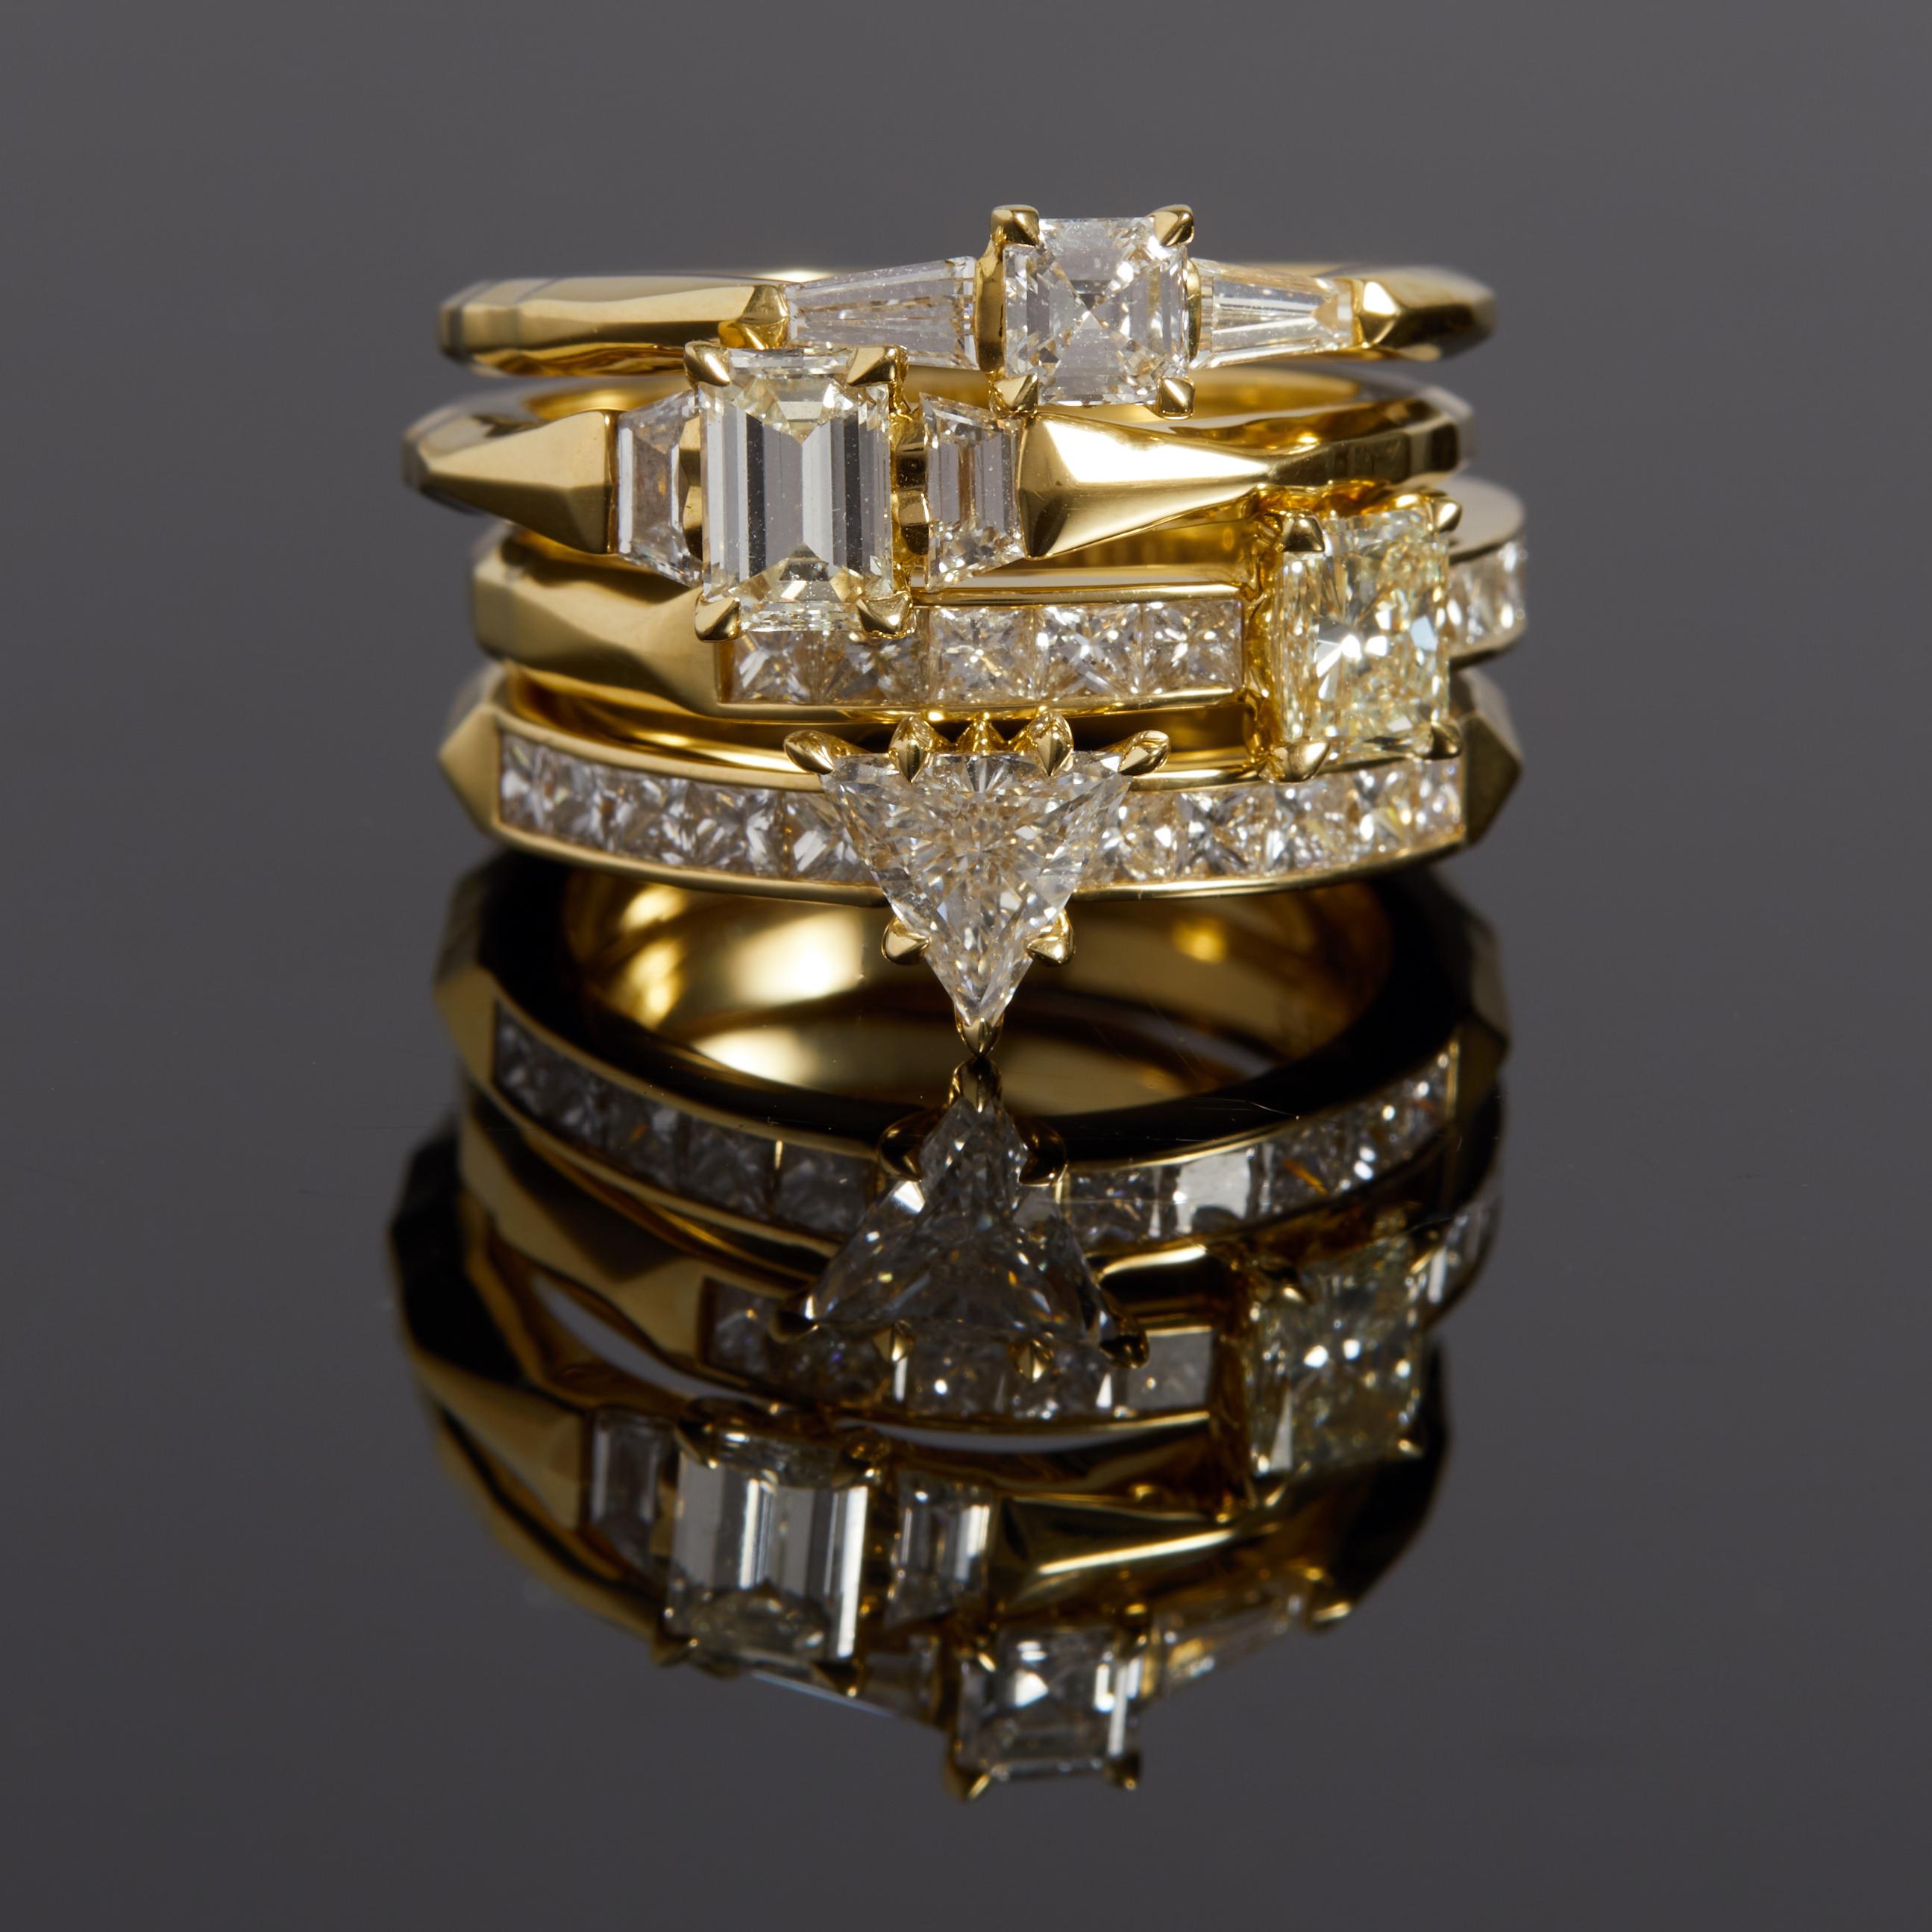 Vergangenheit, Gegenwart und Zukunft

Ring aus 18 Karat Gelbgold und Diamanten. Der Mittelstein ist  4 x 2,2 x 2,2 mm 0,2ct Diamanten mit zwei 3,7 x 3,6 mm 0,3ct spitz zulaufenden Baguette-Diamanten an den Schultern.